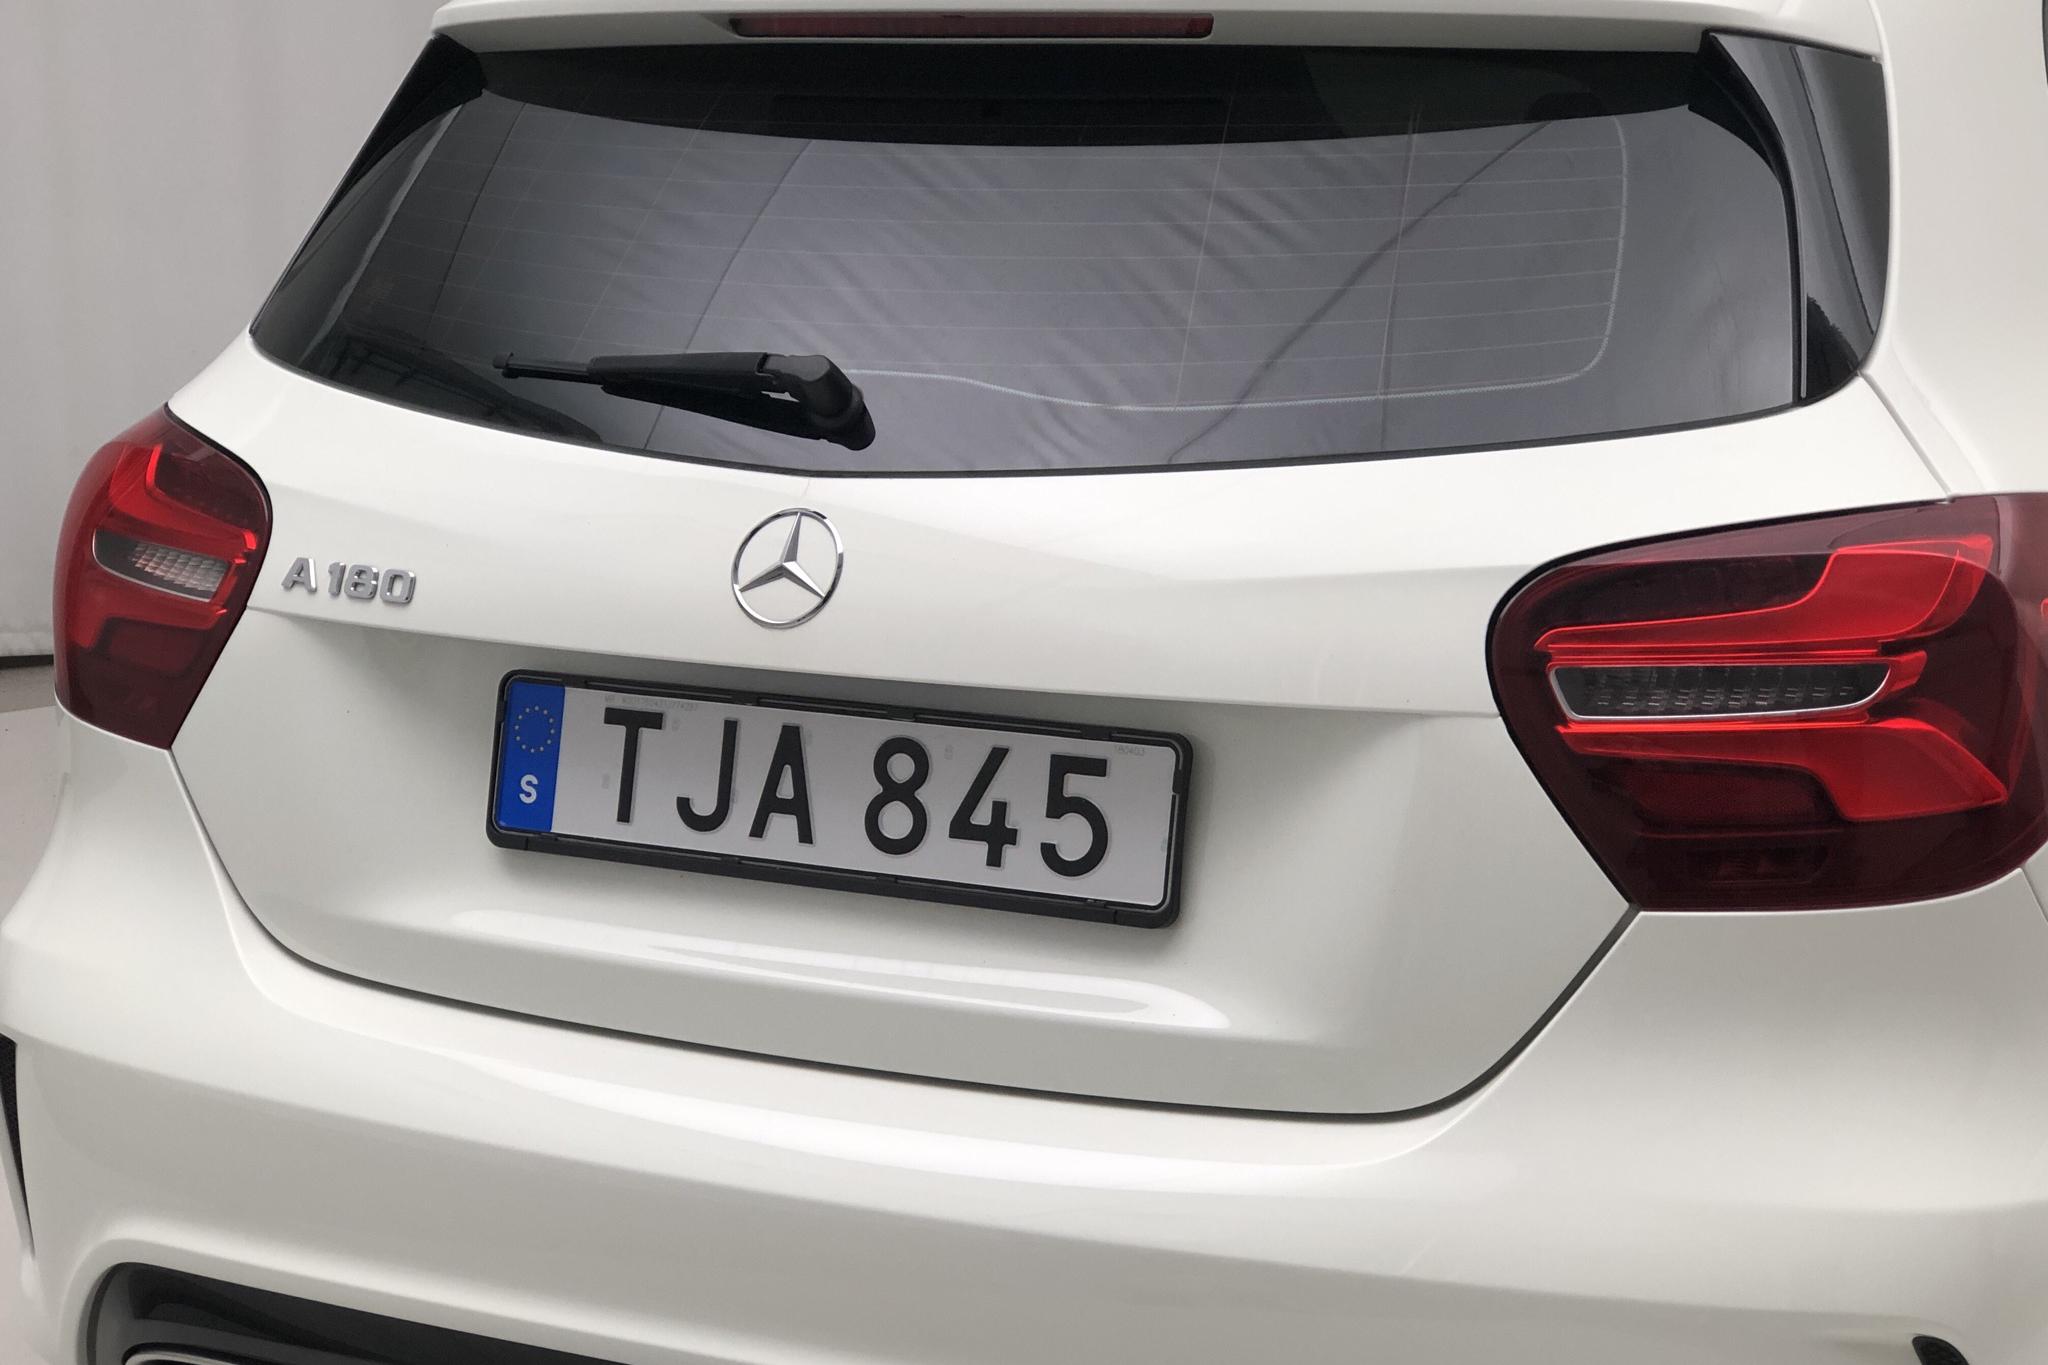 Mercedes A 180 5dr W176 (122hk) - 117 680 km - Automatic - white - 2018